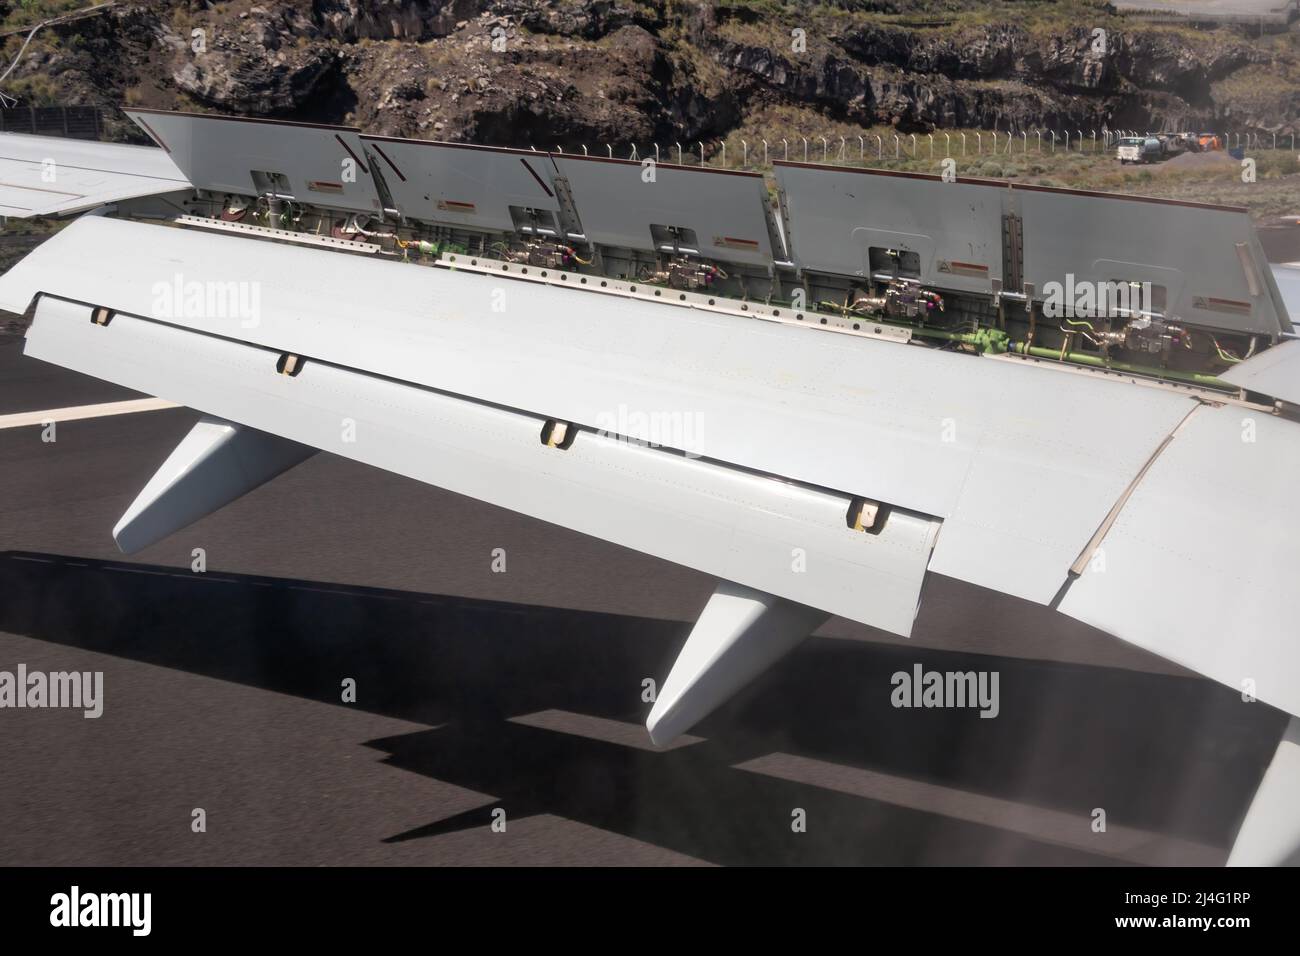 Ala de avión con solapas y alerones totalmente extendida para ralentizar el avión después de aterrizar en el aeropuerto de La Palma Foto de stock